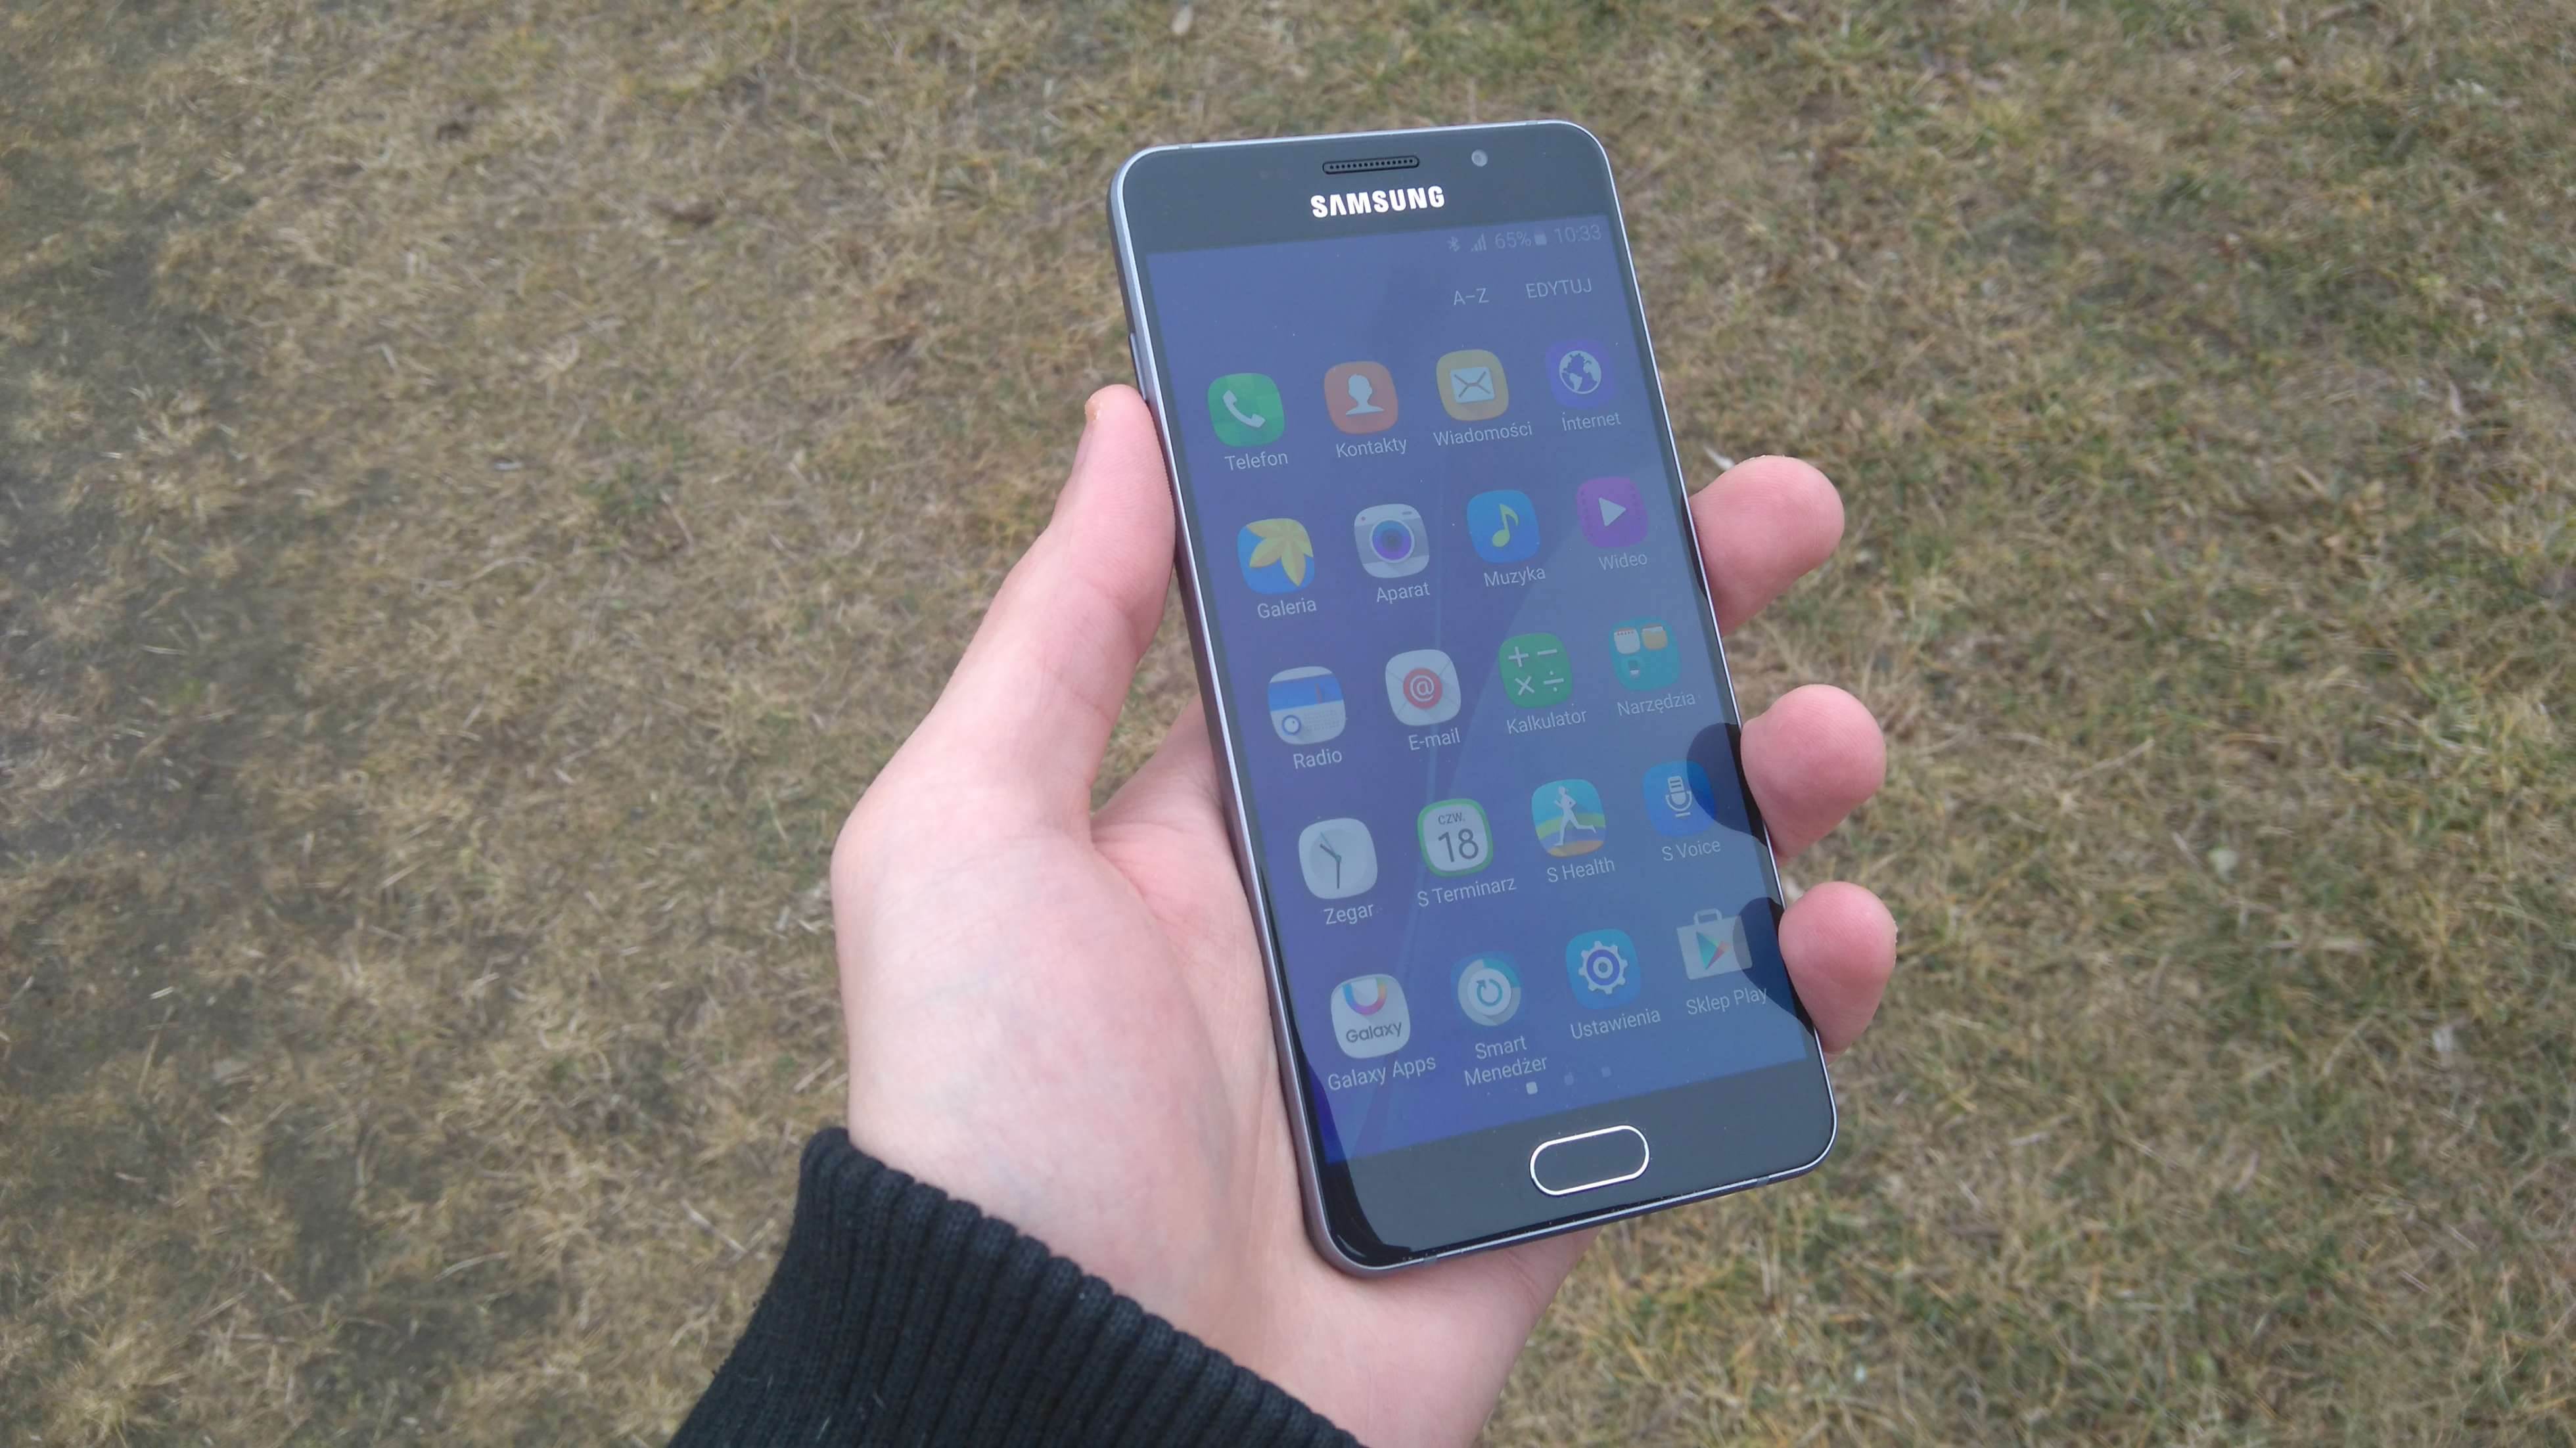 Samsung Galaxy A5 (2016) - recenzja urządzenia recenzje, polecane zalety, wady, Specyfikacja, Samsung Galaxy A5 2016, Samsung, recenzja Samsung Galaxy A5 (2016), Recenzja, polska recenzja, Opis, czy warto kupić Samsung Galaxy A5 (2016), cena, a5 z 2016, 2016  Samsung na nowo zapałał miłością do wysokiej jakości wykonania swoich mobilnych produktów, czego dowodem jest tegoroczna seria A. DSC 0004